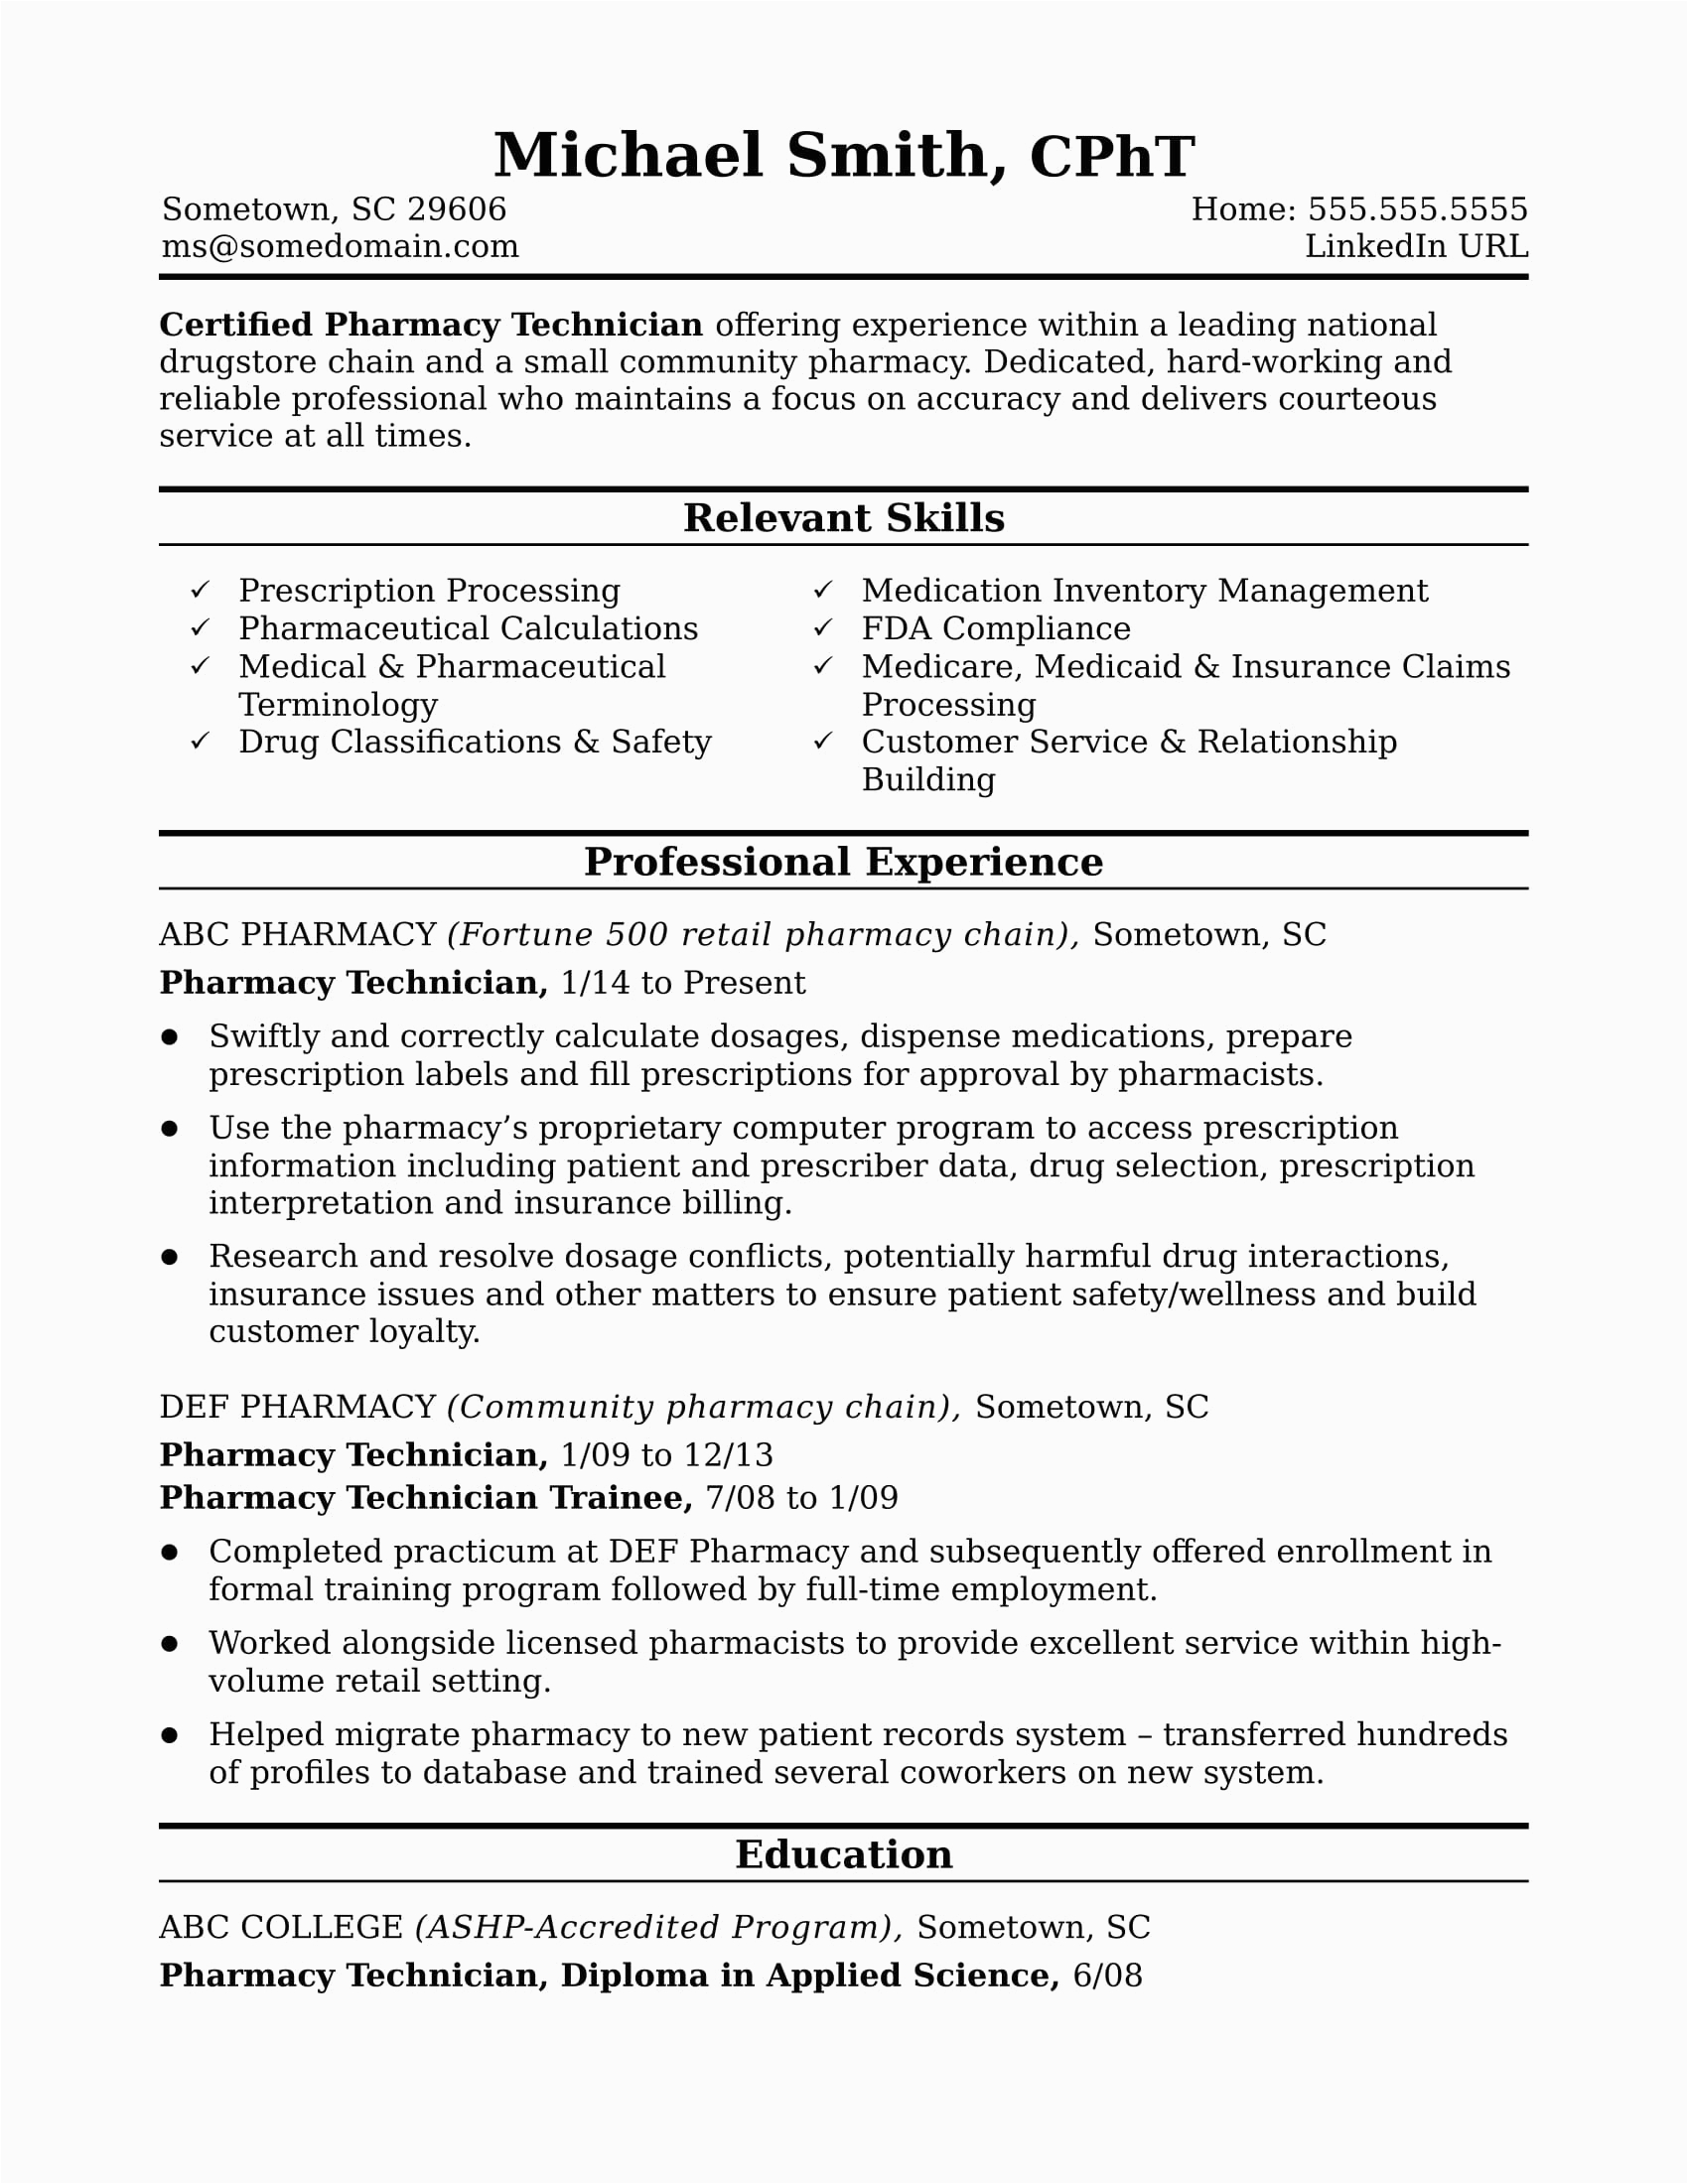 Sample Resume for Pharmacy Technician Position Midlevel Pharmacy Technician Resume Sample